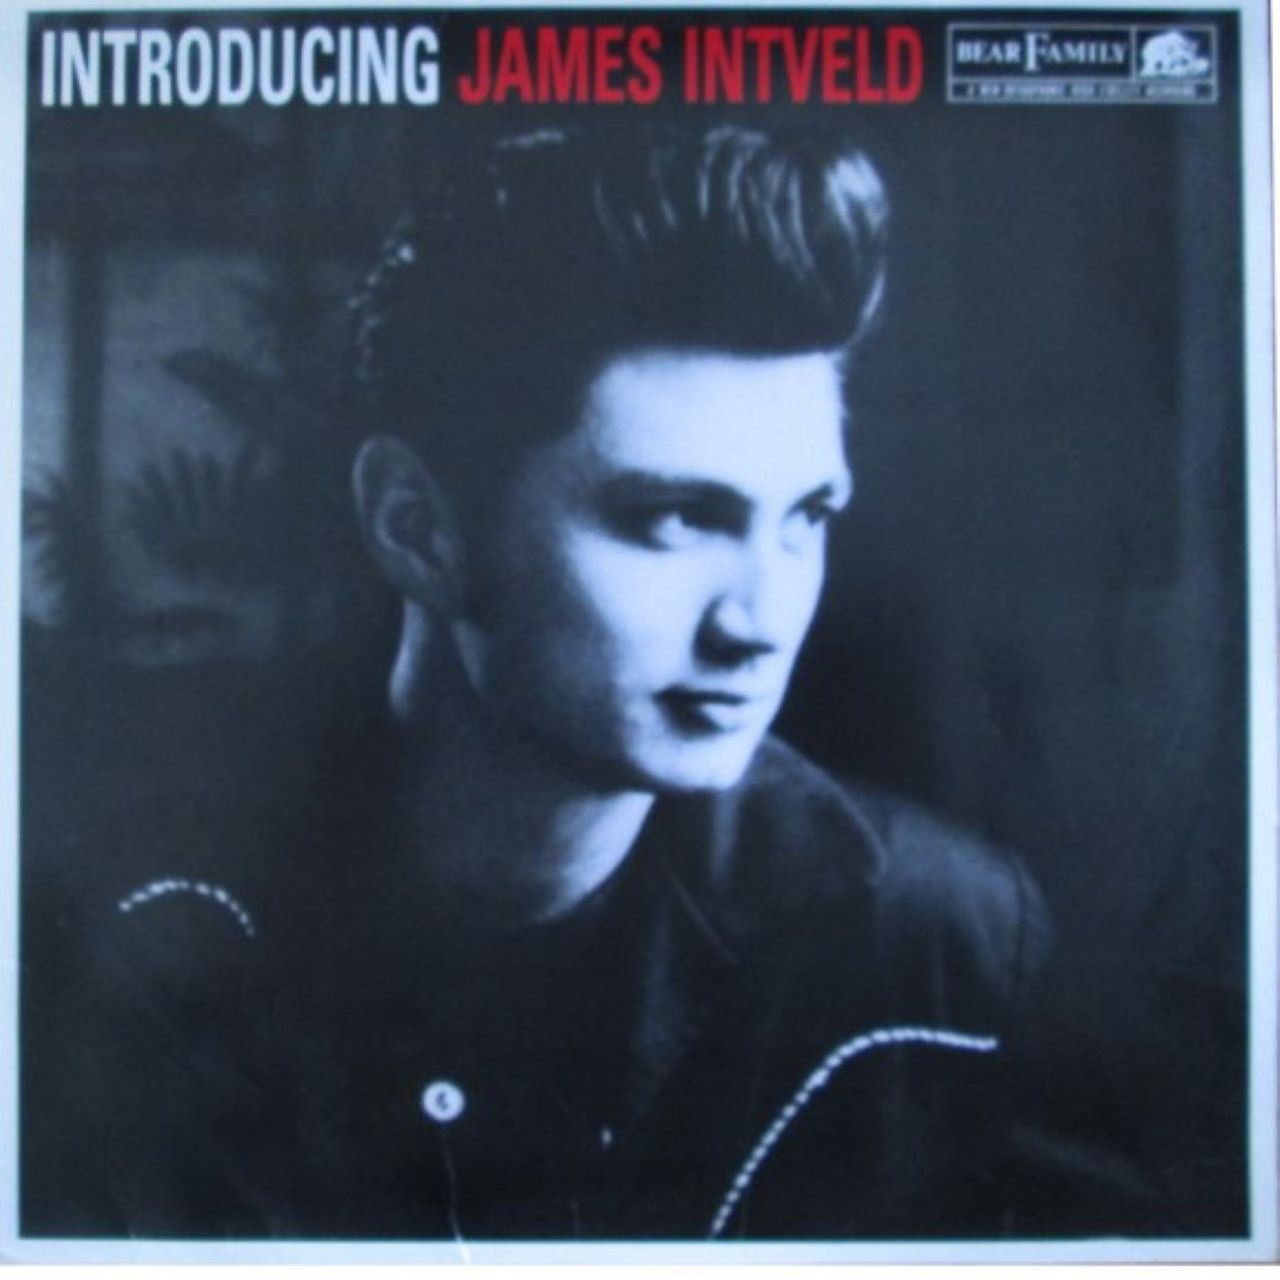 James Intveld – Introducing cover album